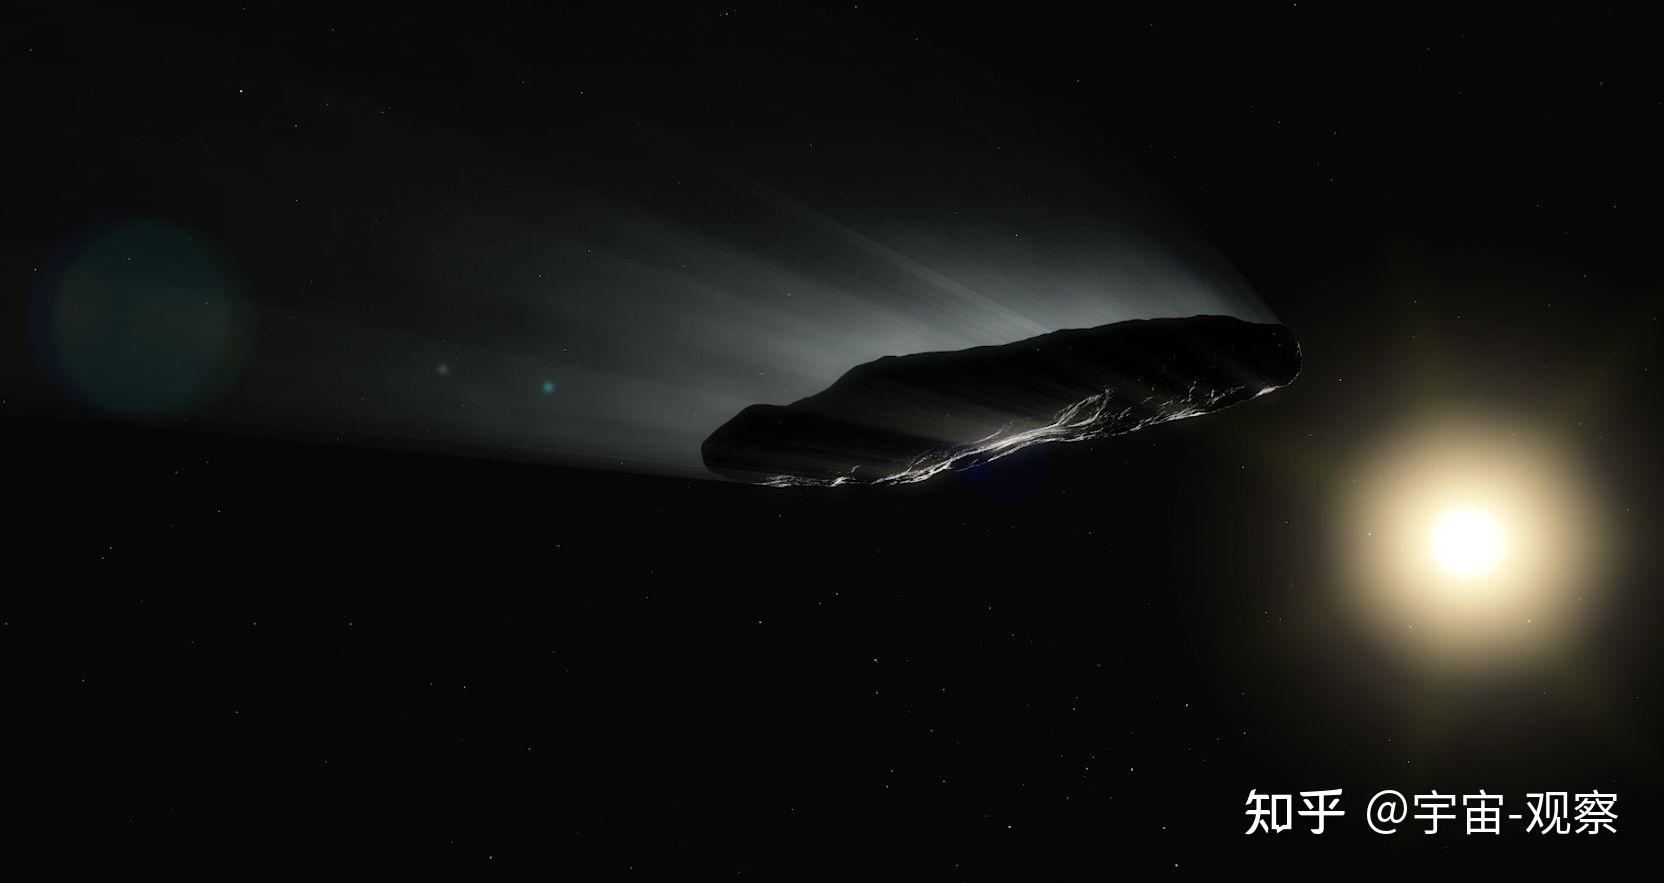 奥陌陌是外星飞船天文学家发射探测器22年后就能追上它